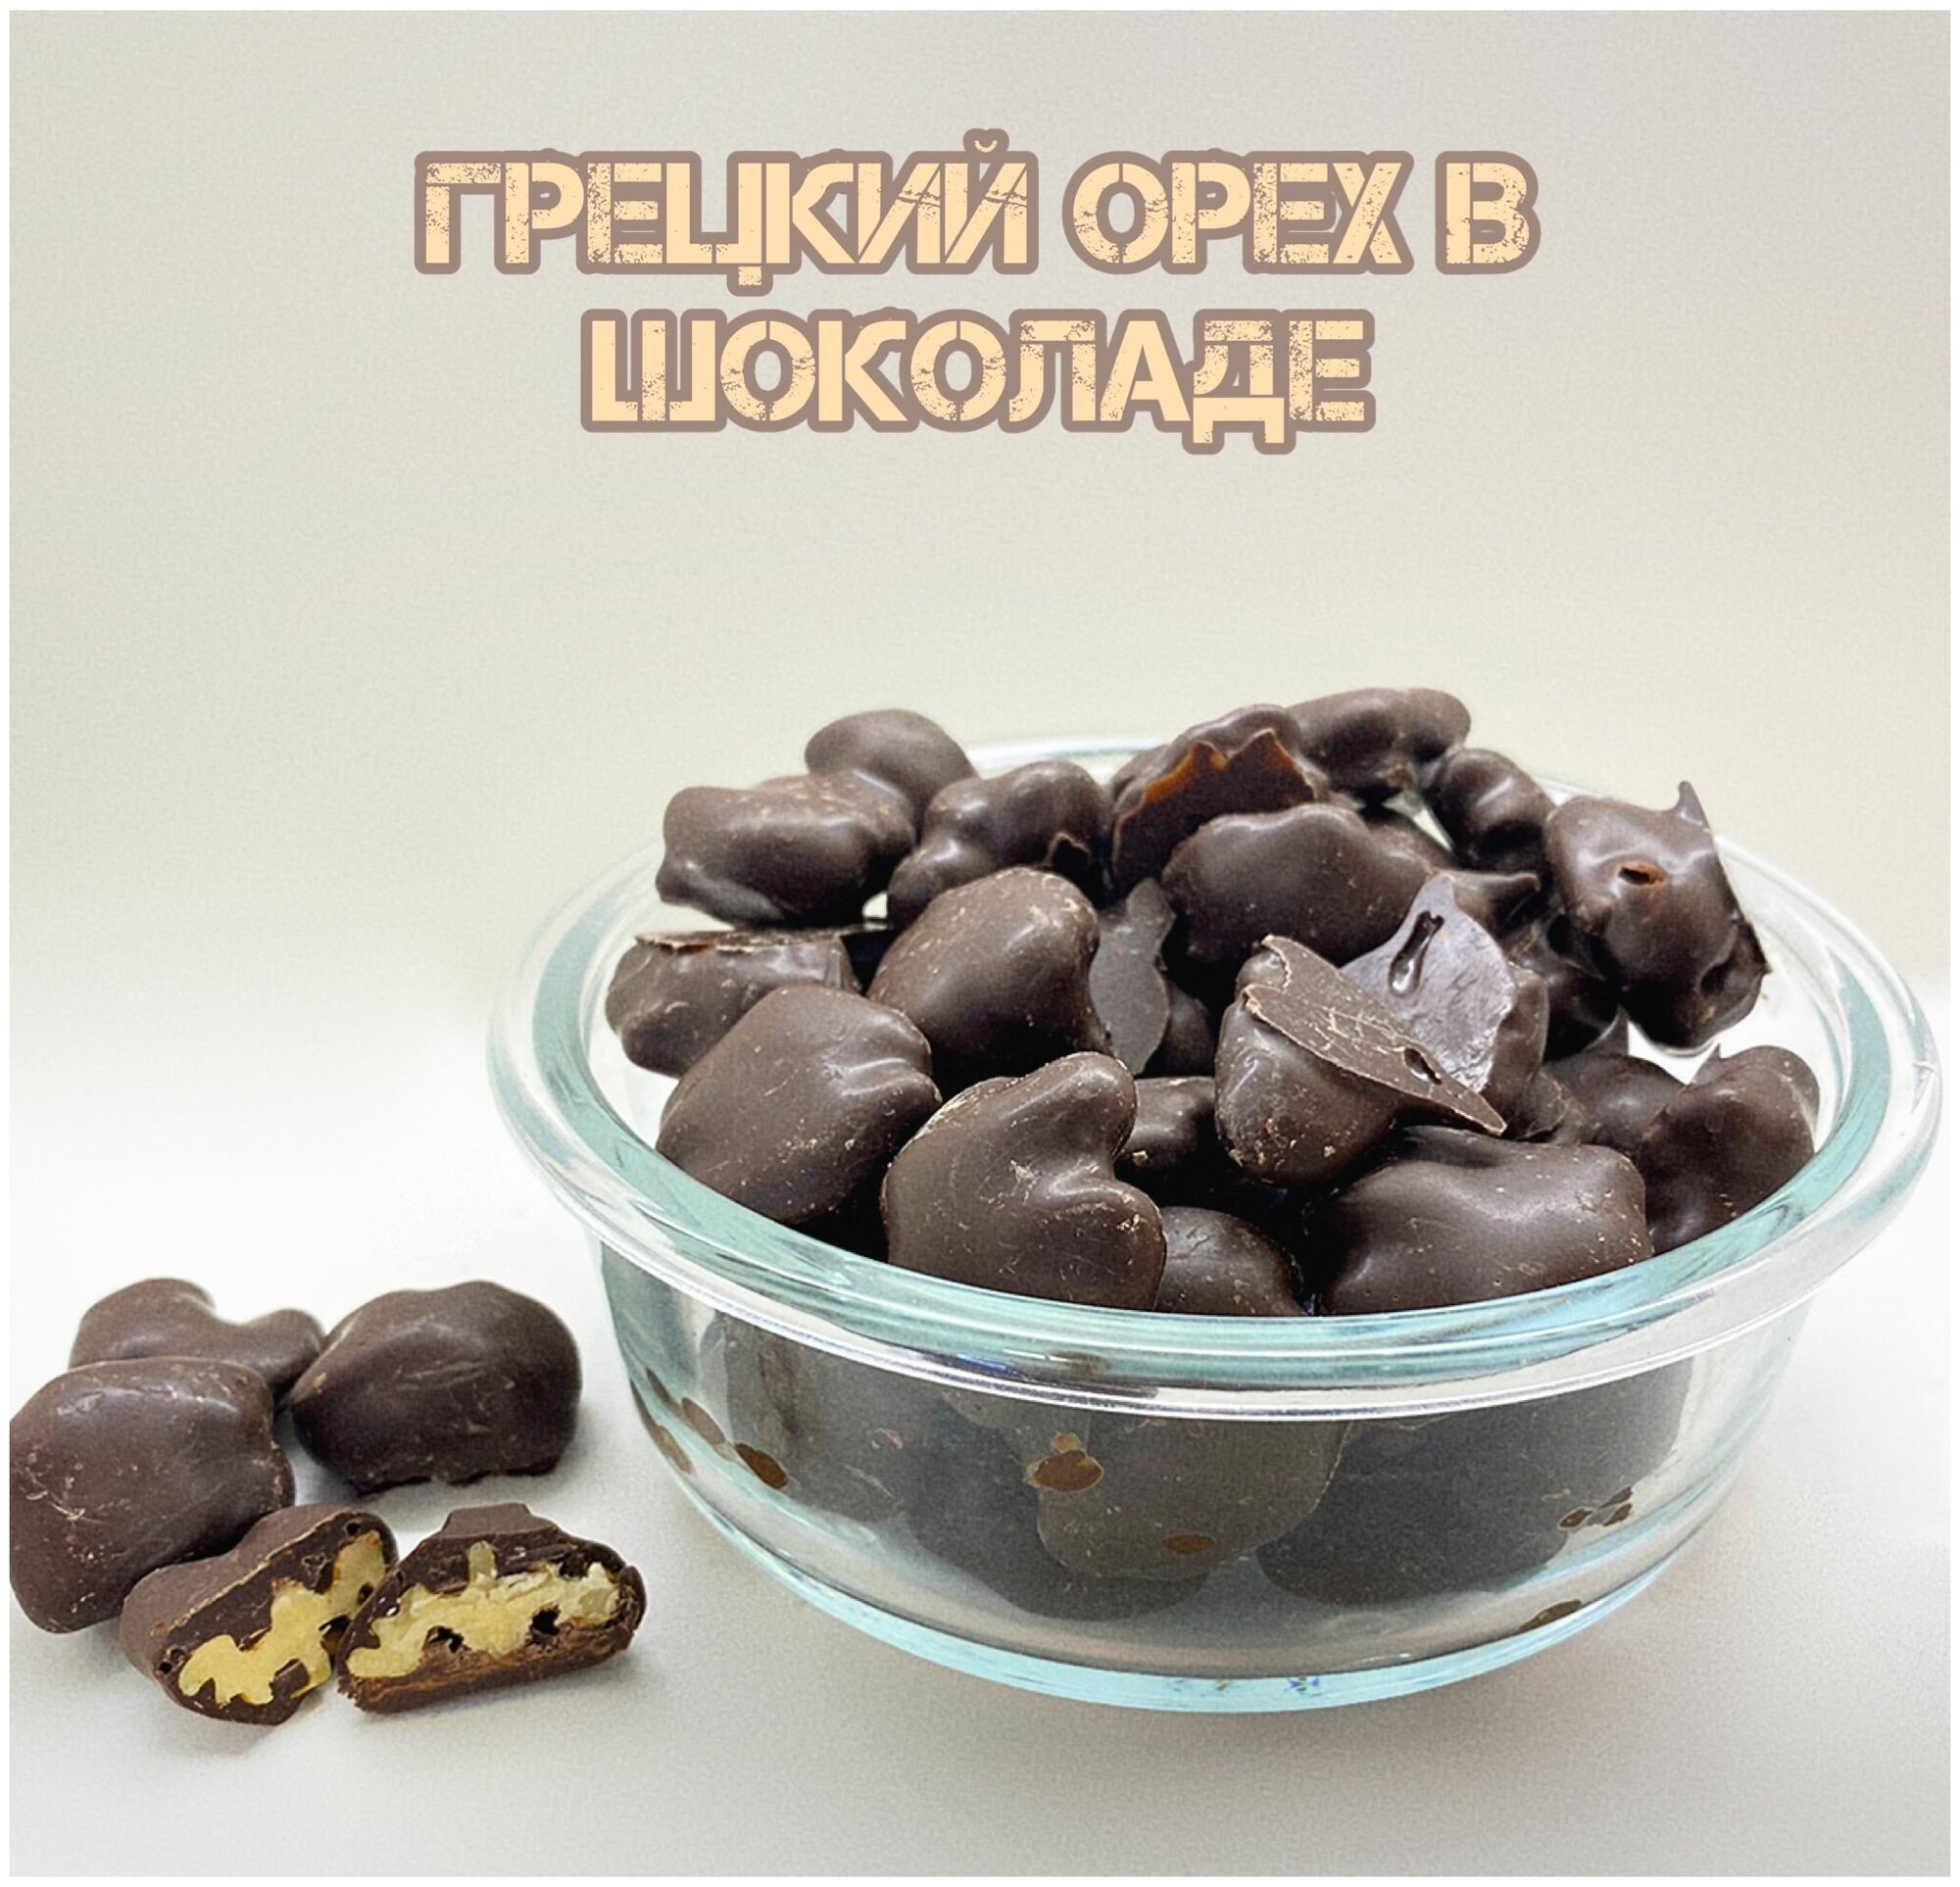 Грецкий орех в шоколадной глазури/ Конфеты грецкий орех в шоколаде - фотография № 1